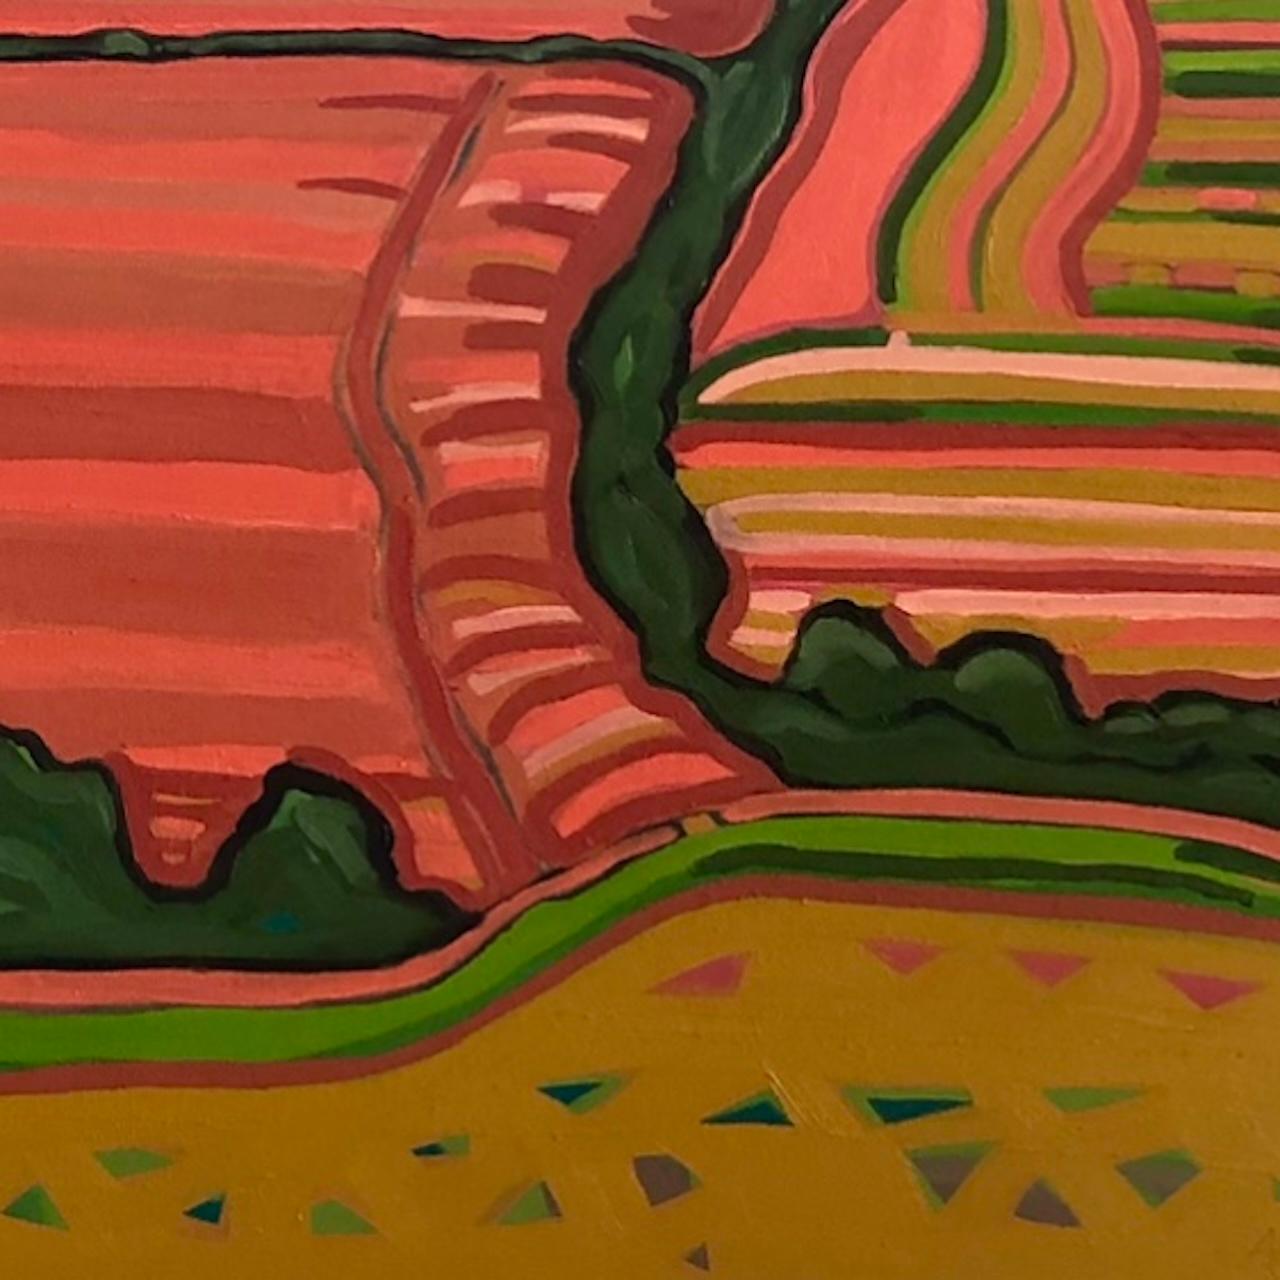 Striped Fields est une peinture à l'huile originale de l'artiste Alexa Roscoe. Il s'agit d'un paysage vibrant et coloré. Alexa a capturé le mouvement et les motifs audacieux qui sont souvent présents dans son travail.

INFORMATIONS COMPLÉMENTAIRES